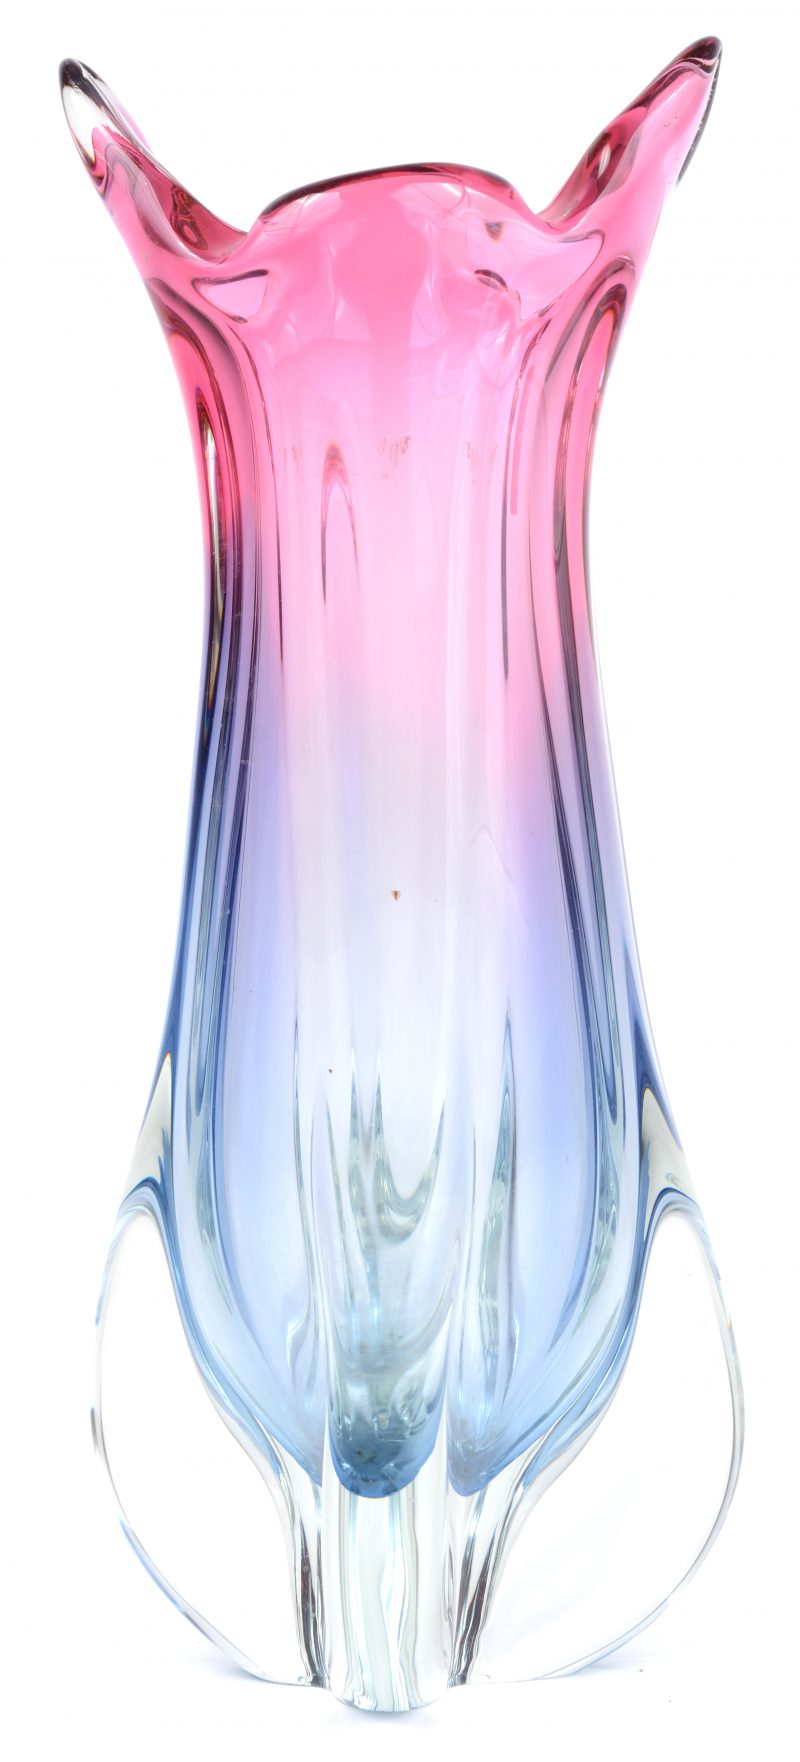 Een kristallen vaas in blauw, over kleurloos overgaand in rood.